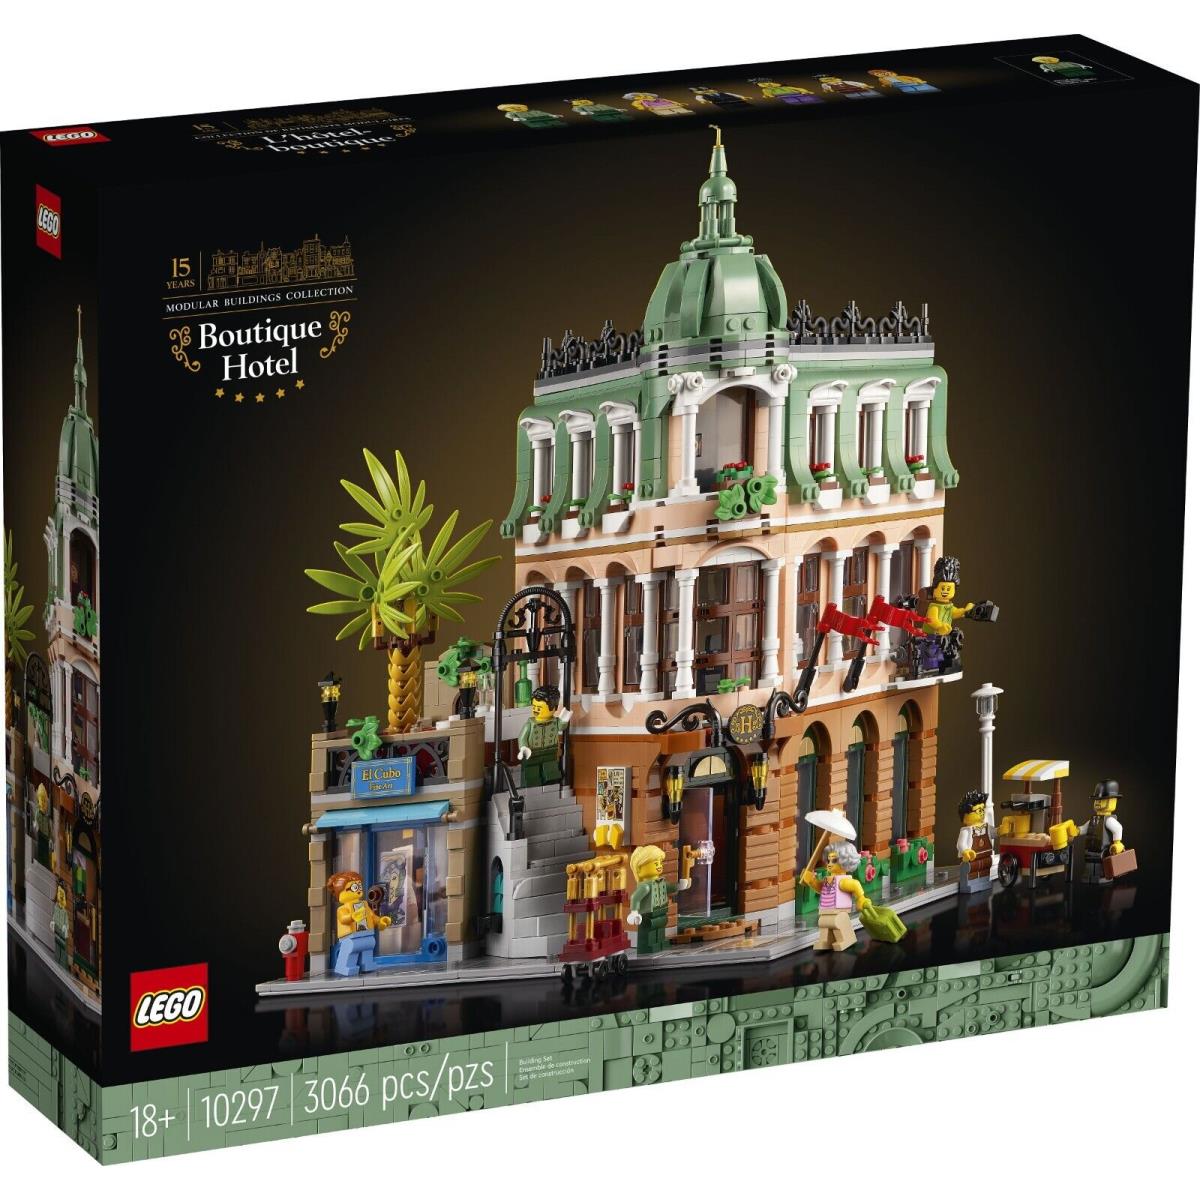 Lego 10297 Boutique Hotel Box 3066 Pcs. Ready to Ship